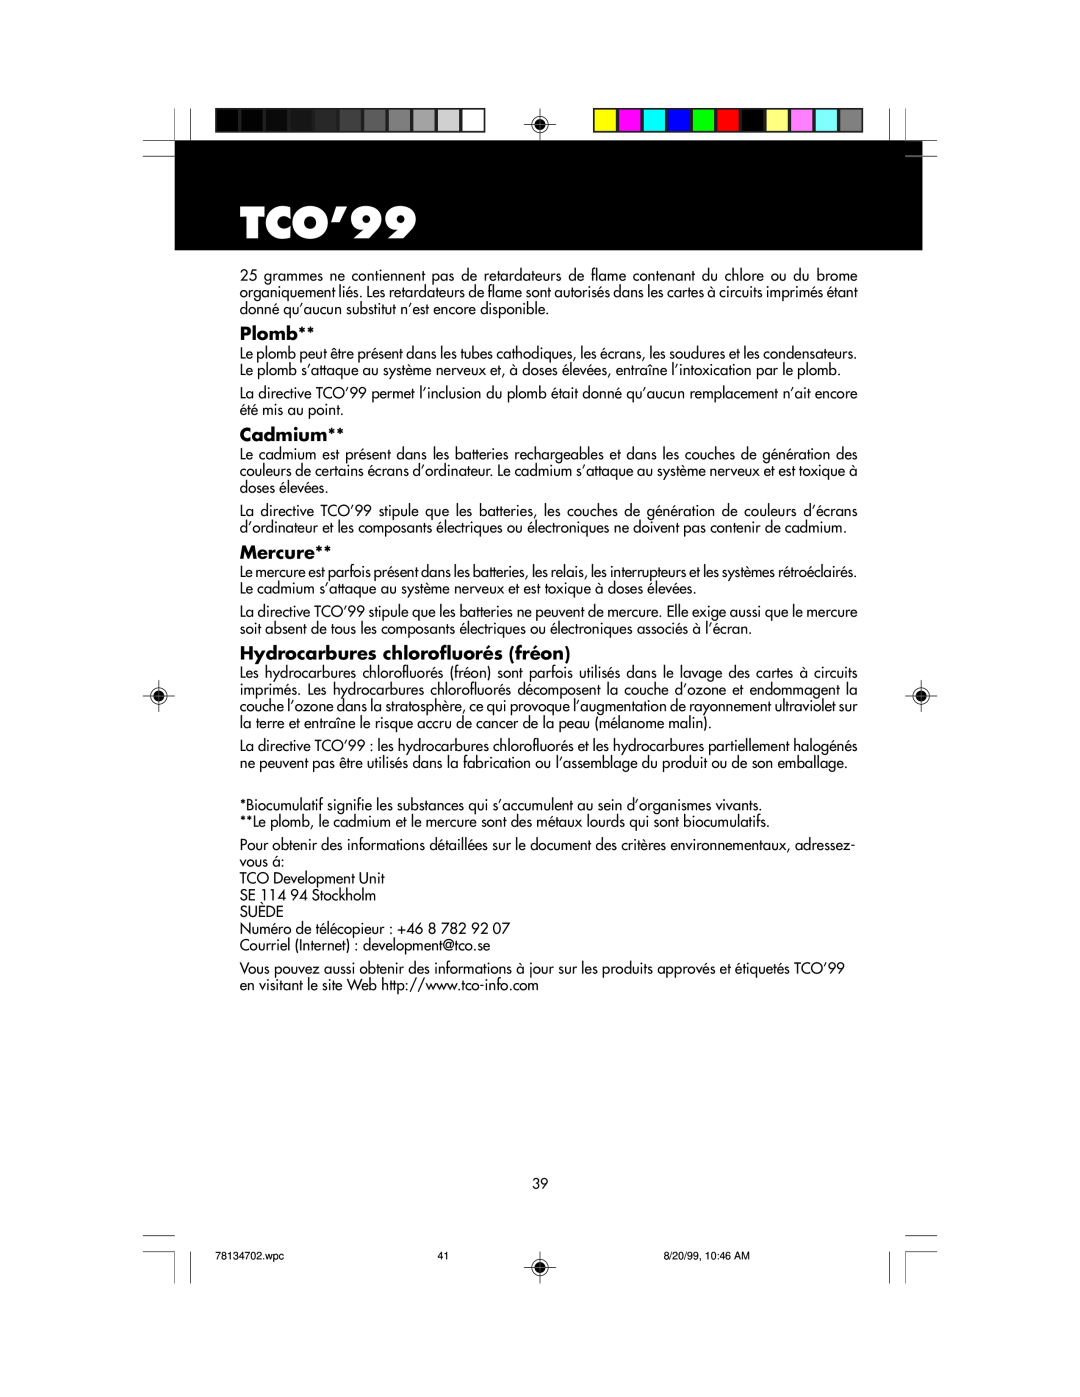 NEC LCD1510+ user manual TCO’99, Plomb, Cadmium, Mercure, Hydrocarbures chlorofluorés fréon 